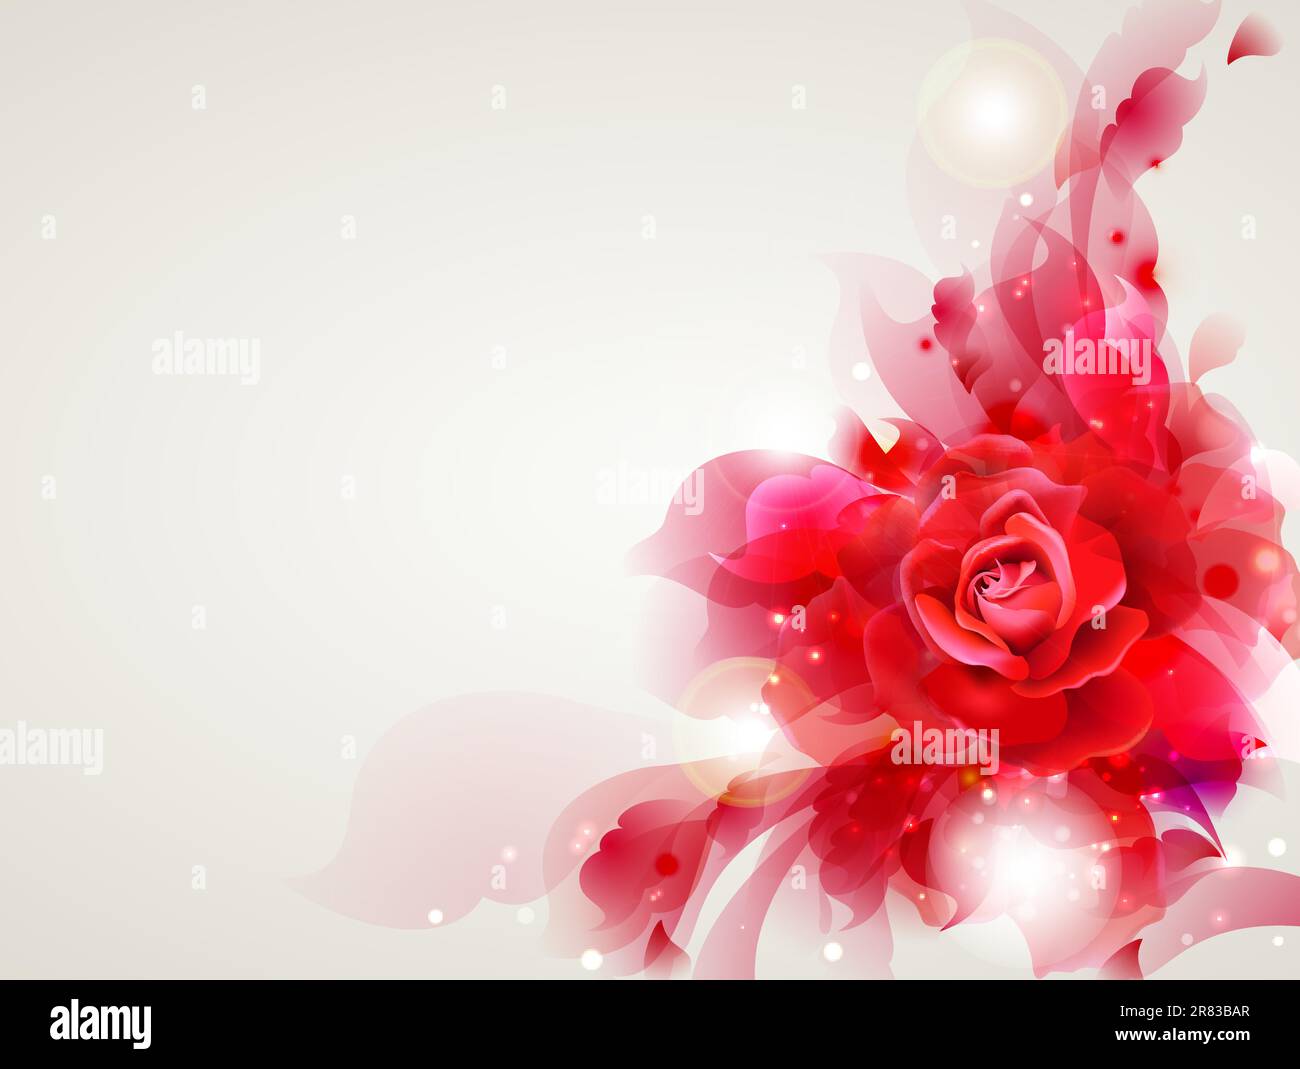 Sfondo morbido astratto con rosa rossa Illustrazione Vettoriale